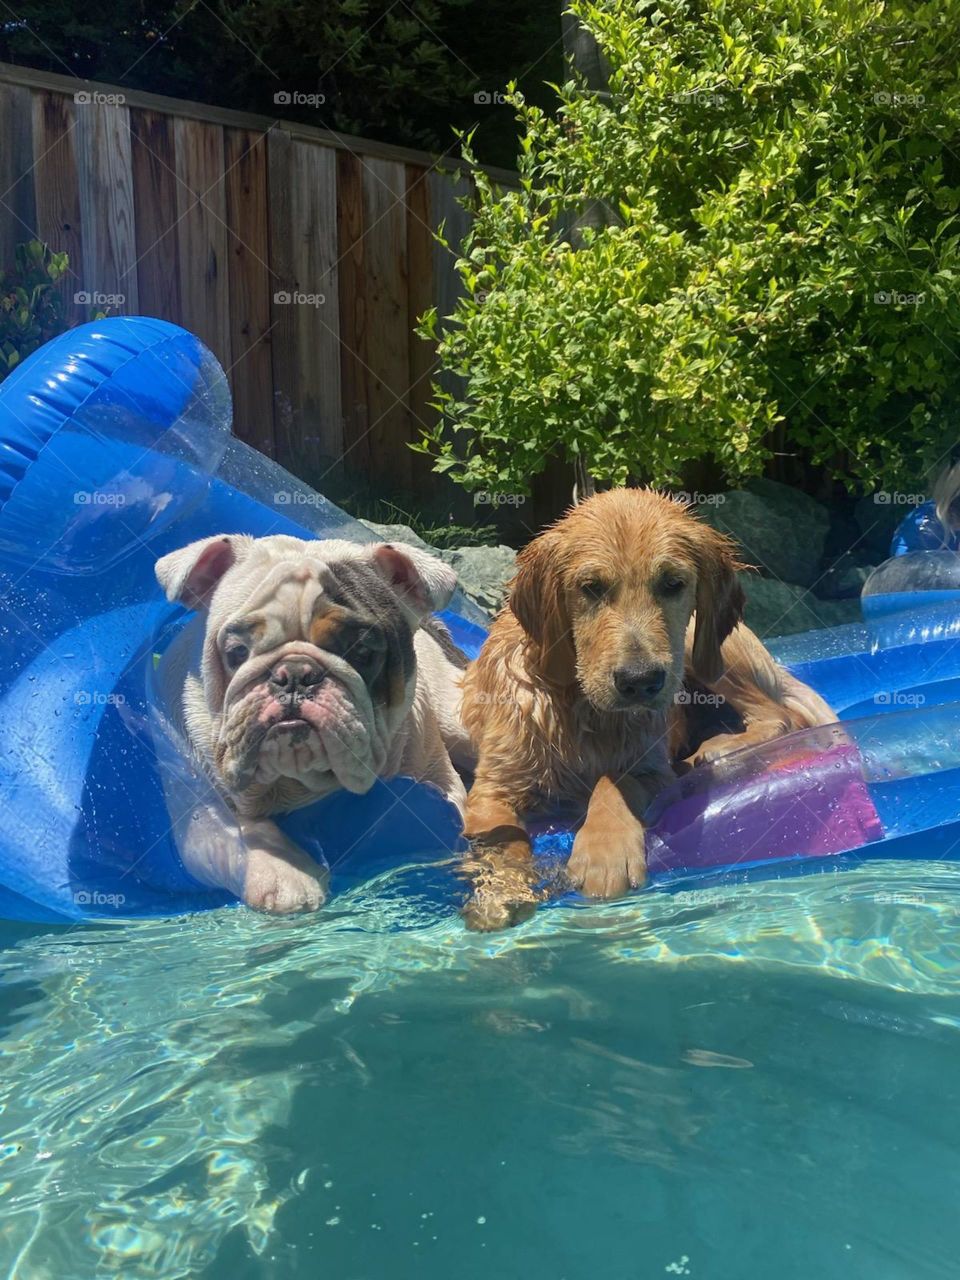 Doggie Pool Time